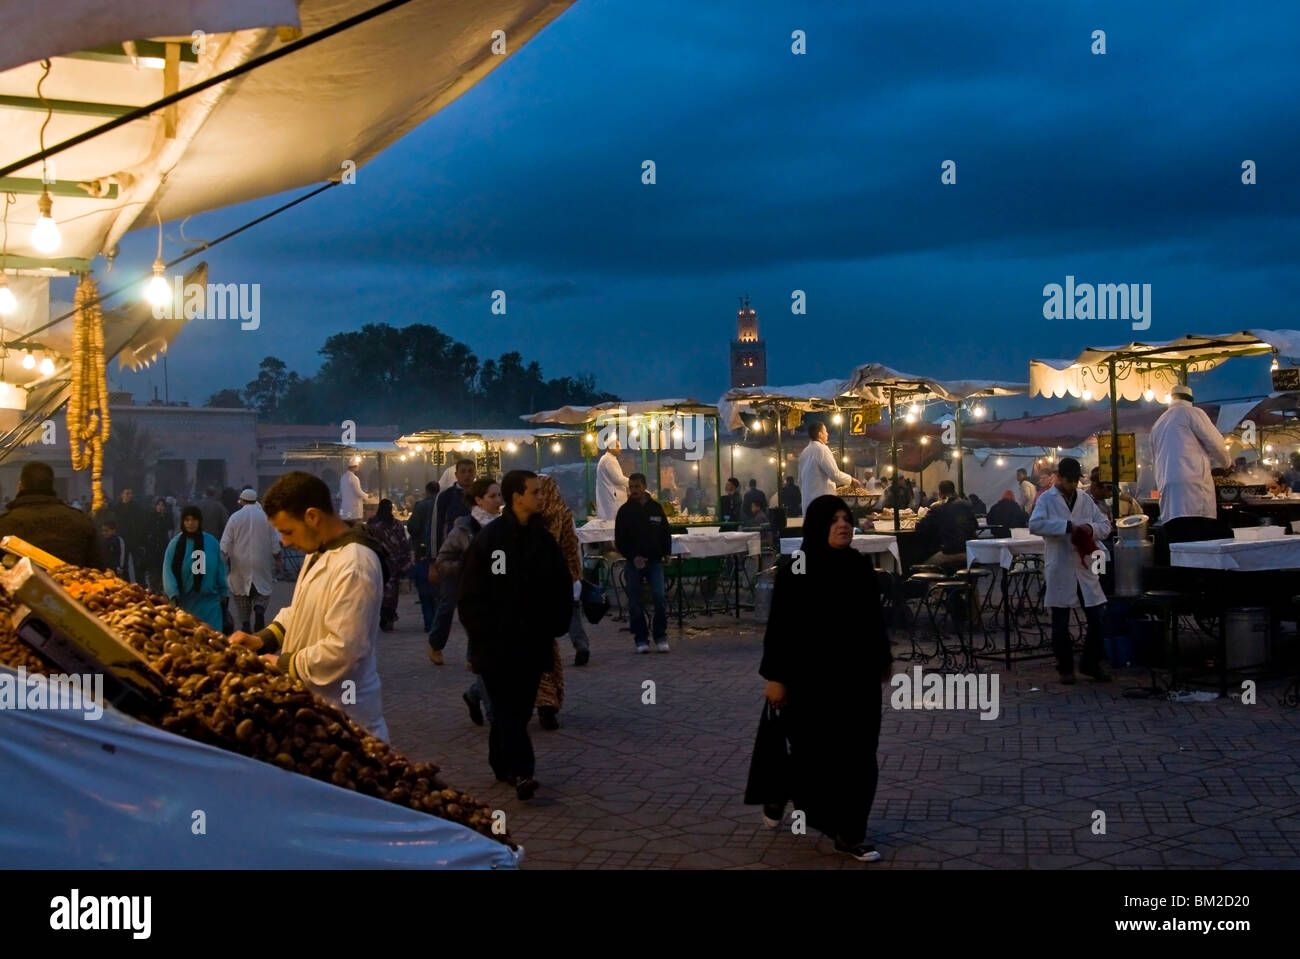 Faire cuire de la nourriture de son échoppe dans la place Djemaa el Fna, la Place Jemaa el Fna (Place Djemaa el Fna), Marrakech (Marrakech, Maroc) Banque D'Images